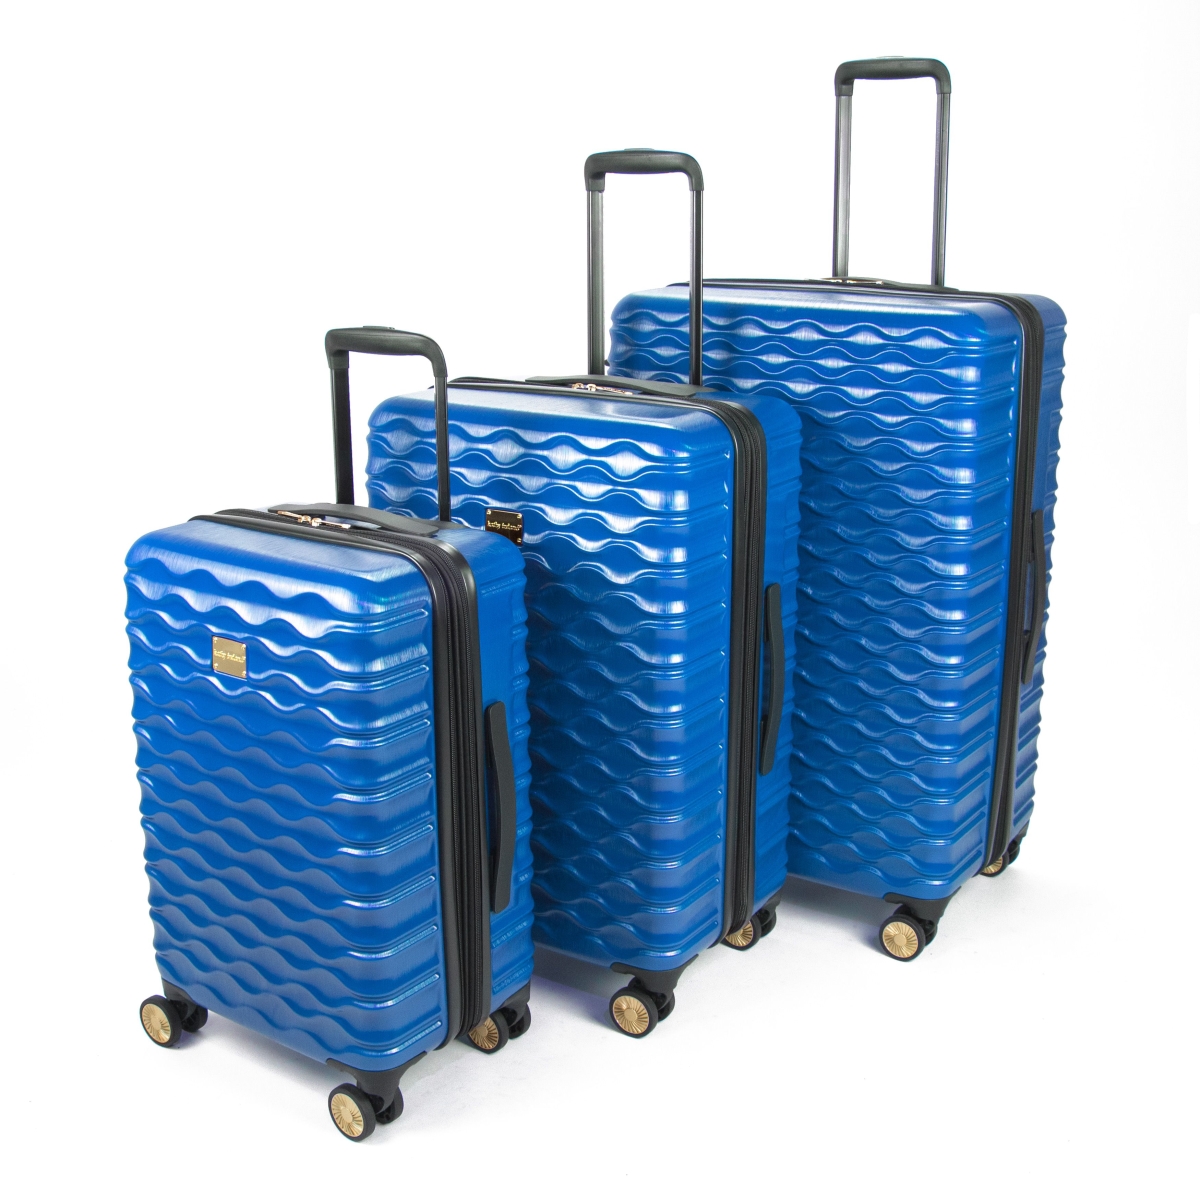 Picture of Kathy Ireland KI115-ST3-BLU Maisy Hardside Spinner Luggage Set, Blue - 3 Piece